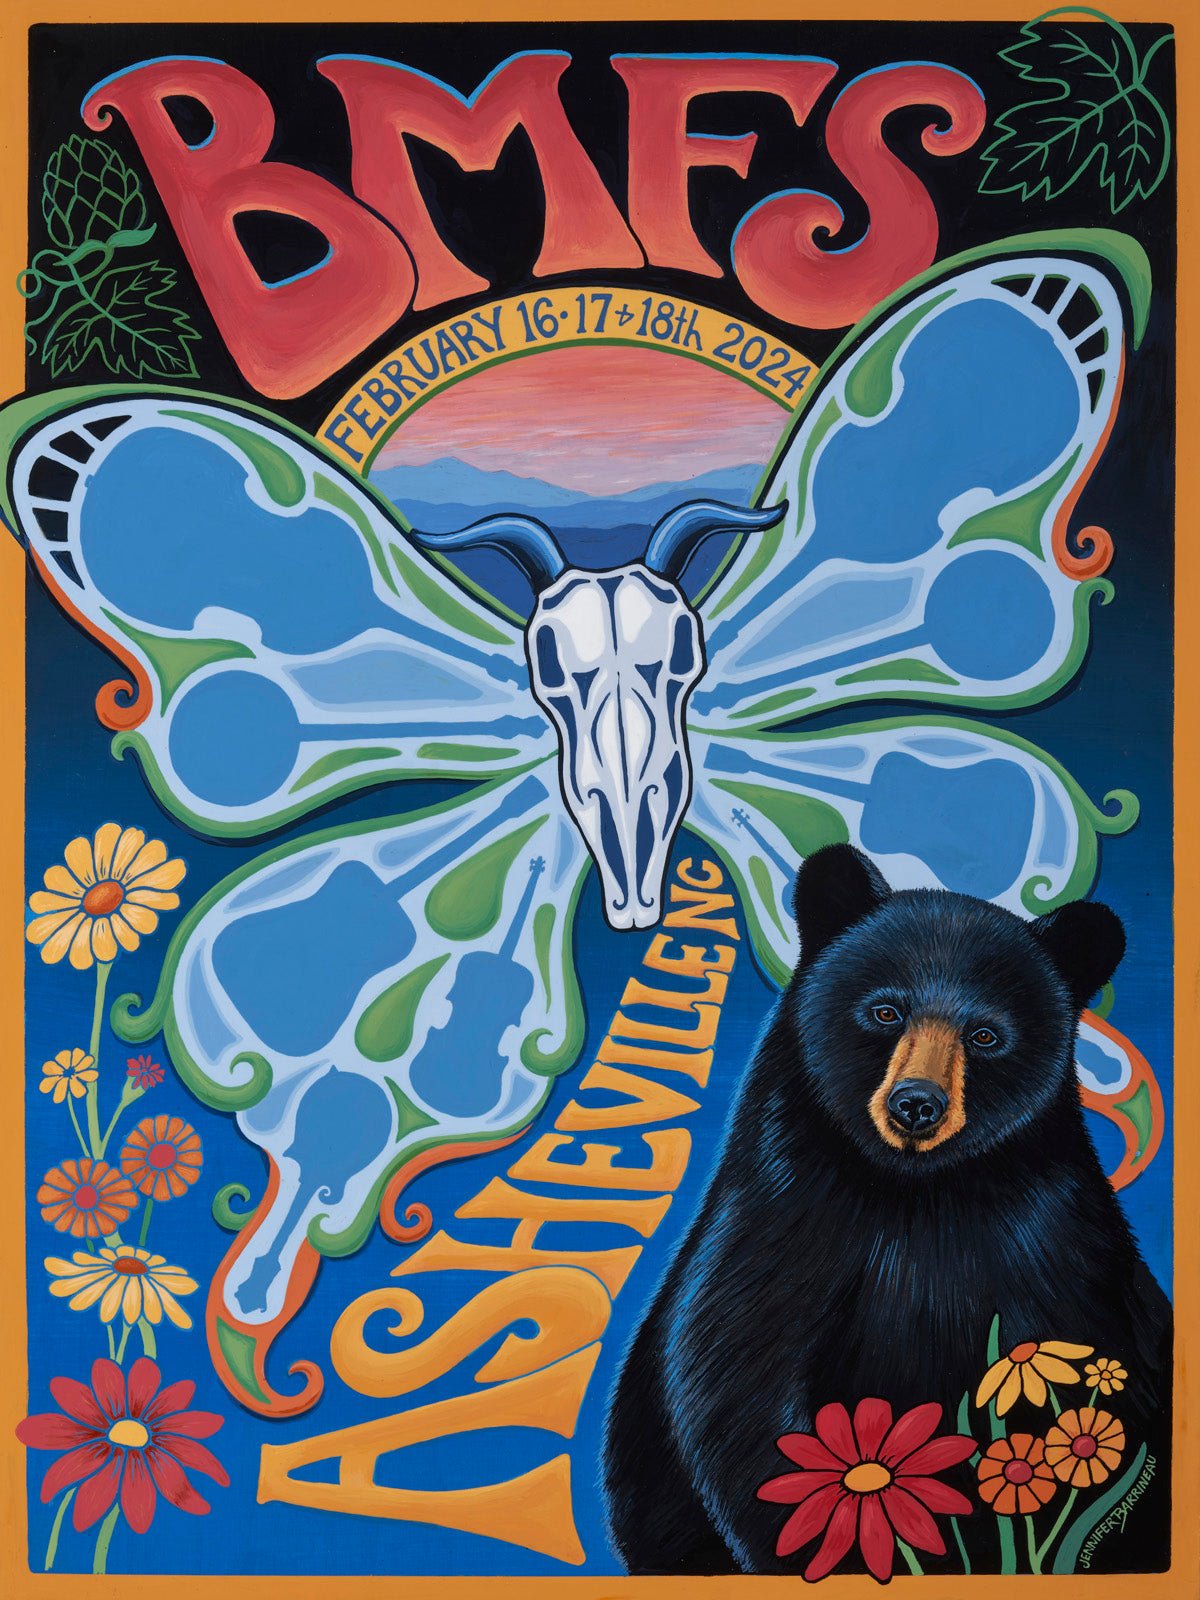 Billy goat skull, strings, guitar, banjo, Asheville black bear with flowers, bmfs poster concert